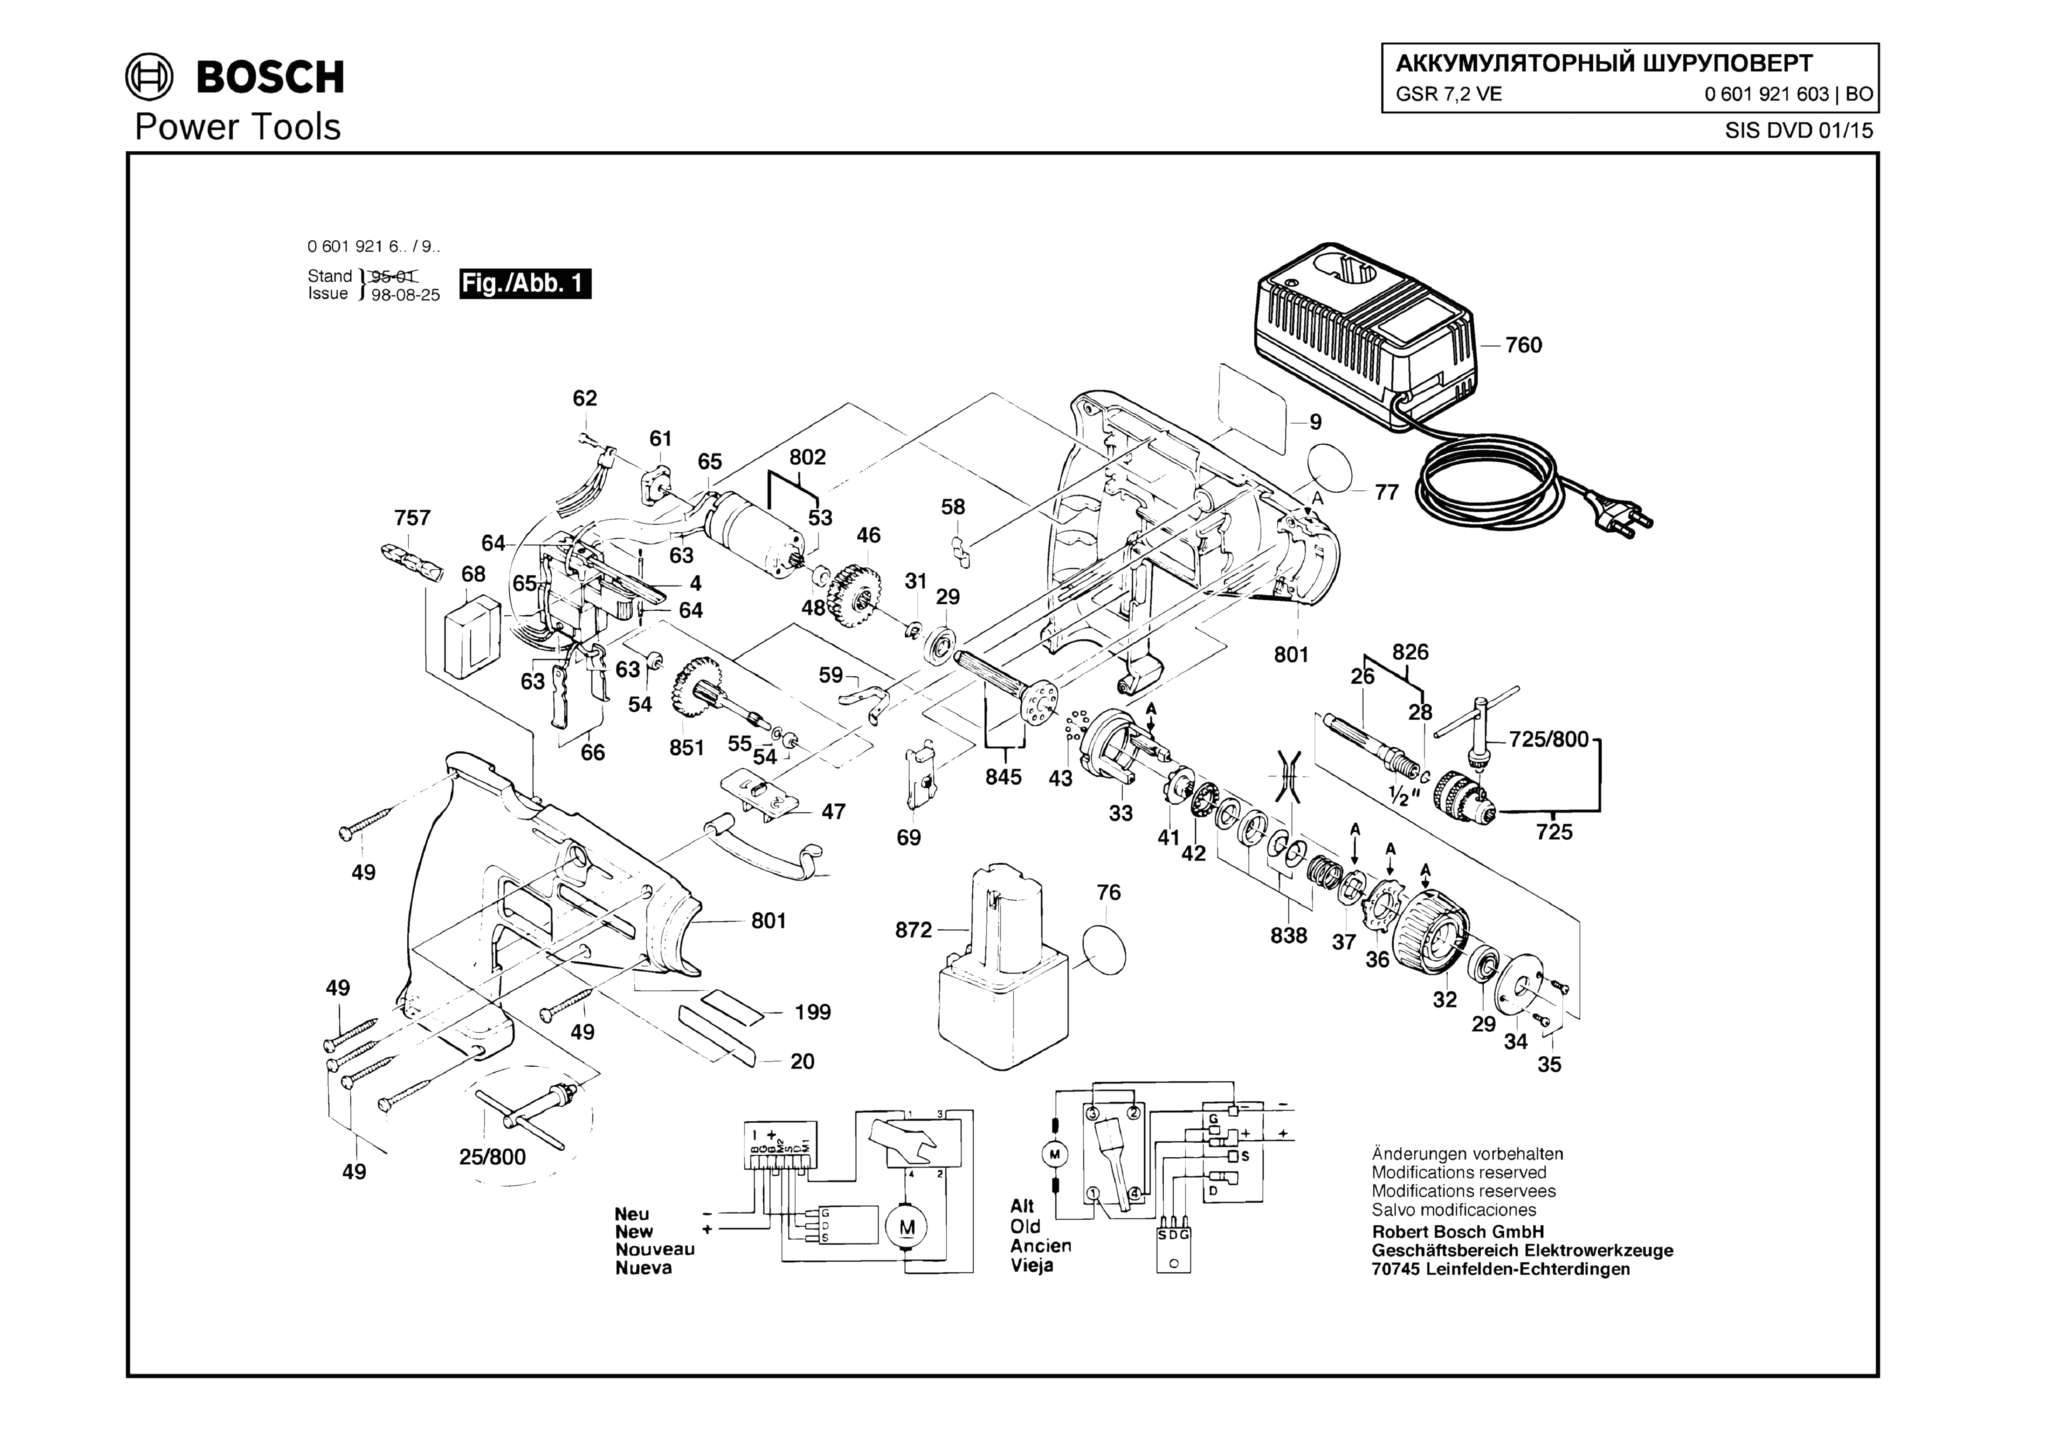 Запчасти, схема и деталировка Bosch GSR 7,2 VE (ТИП 0601921603)